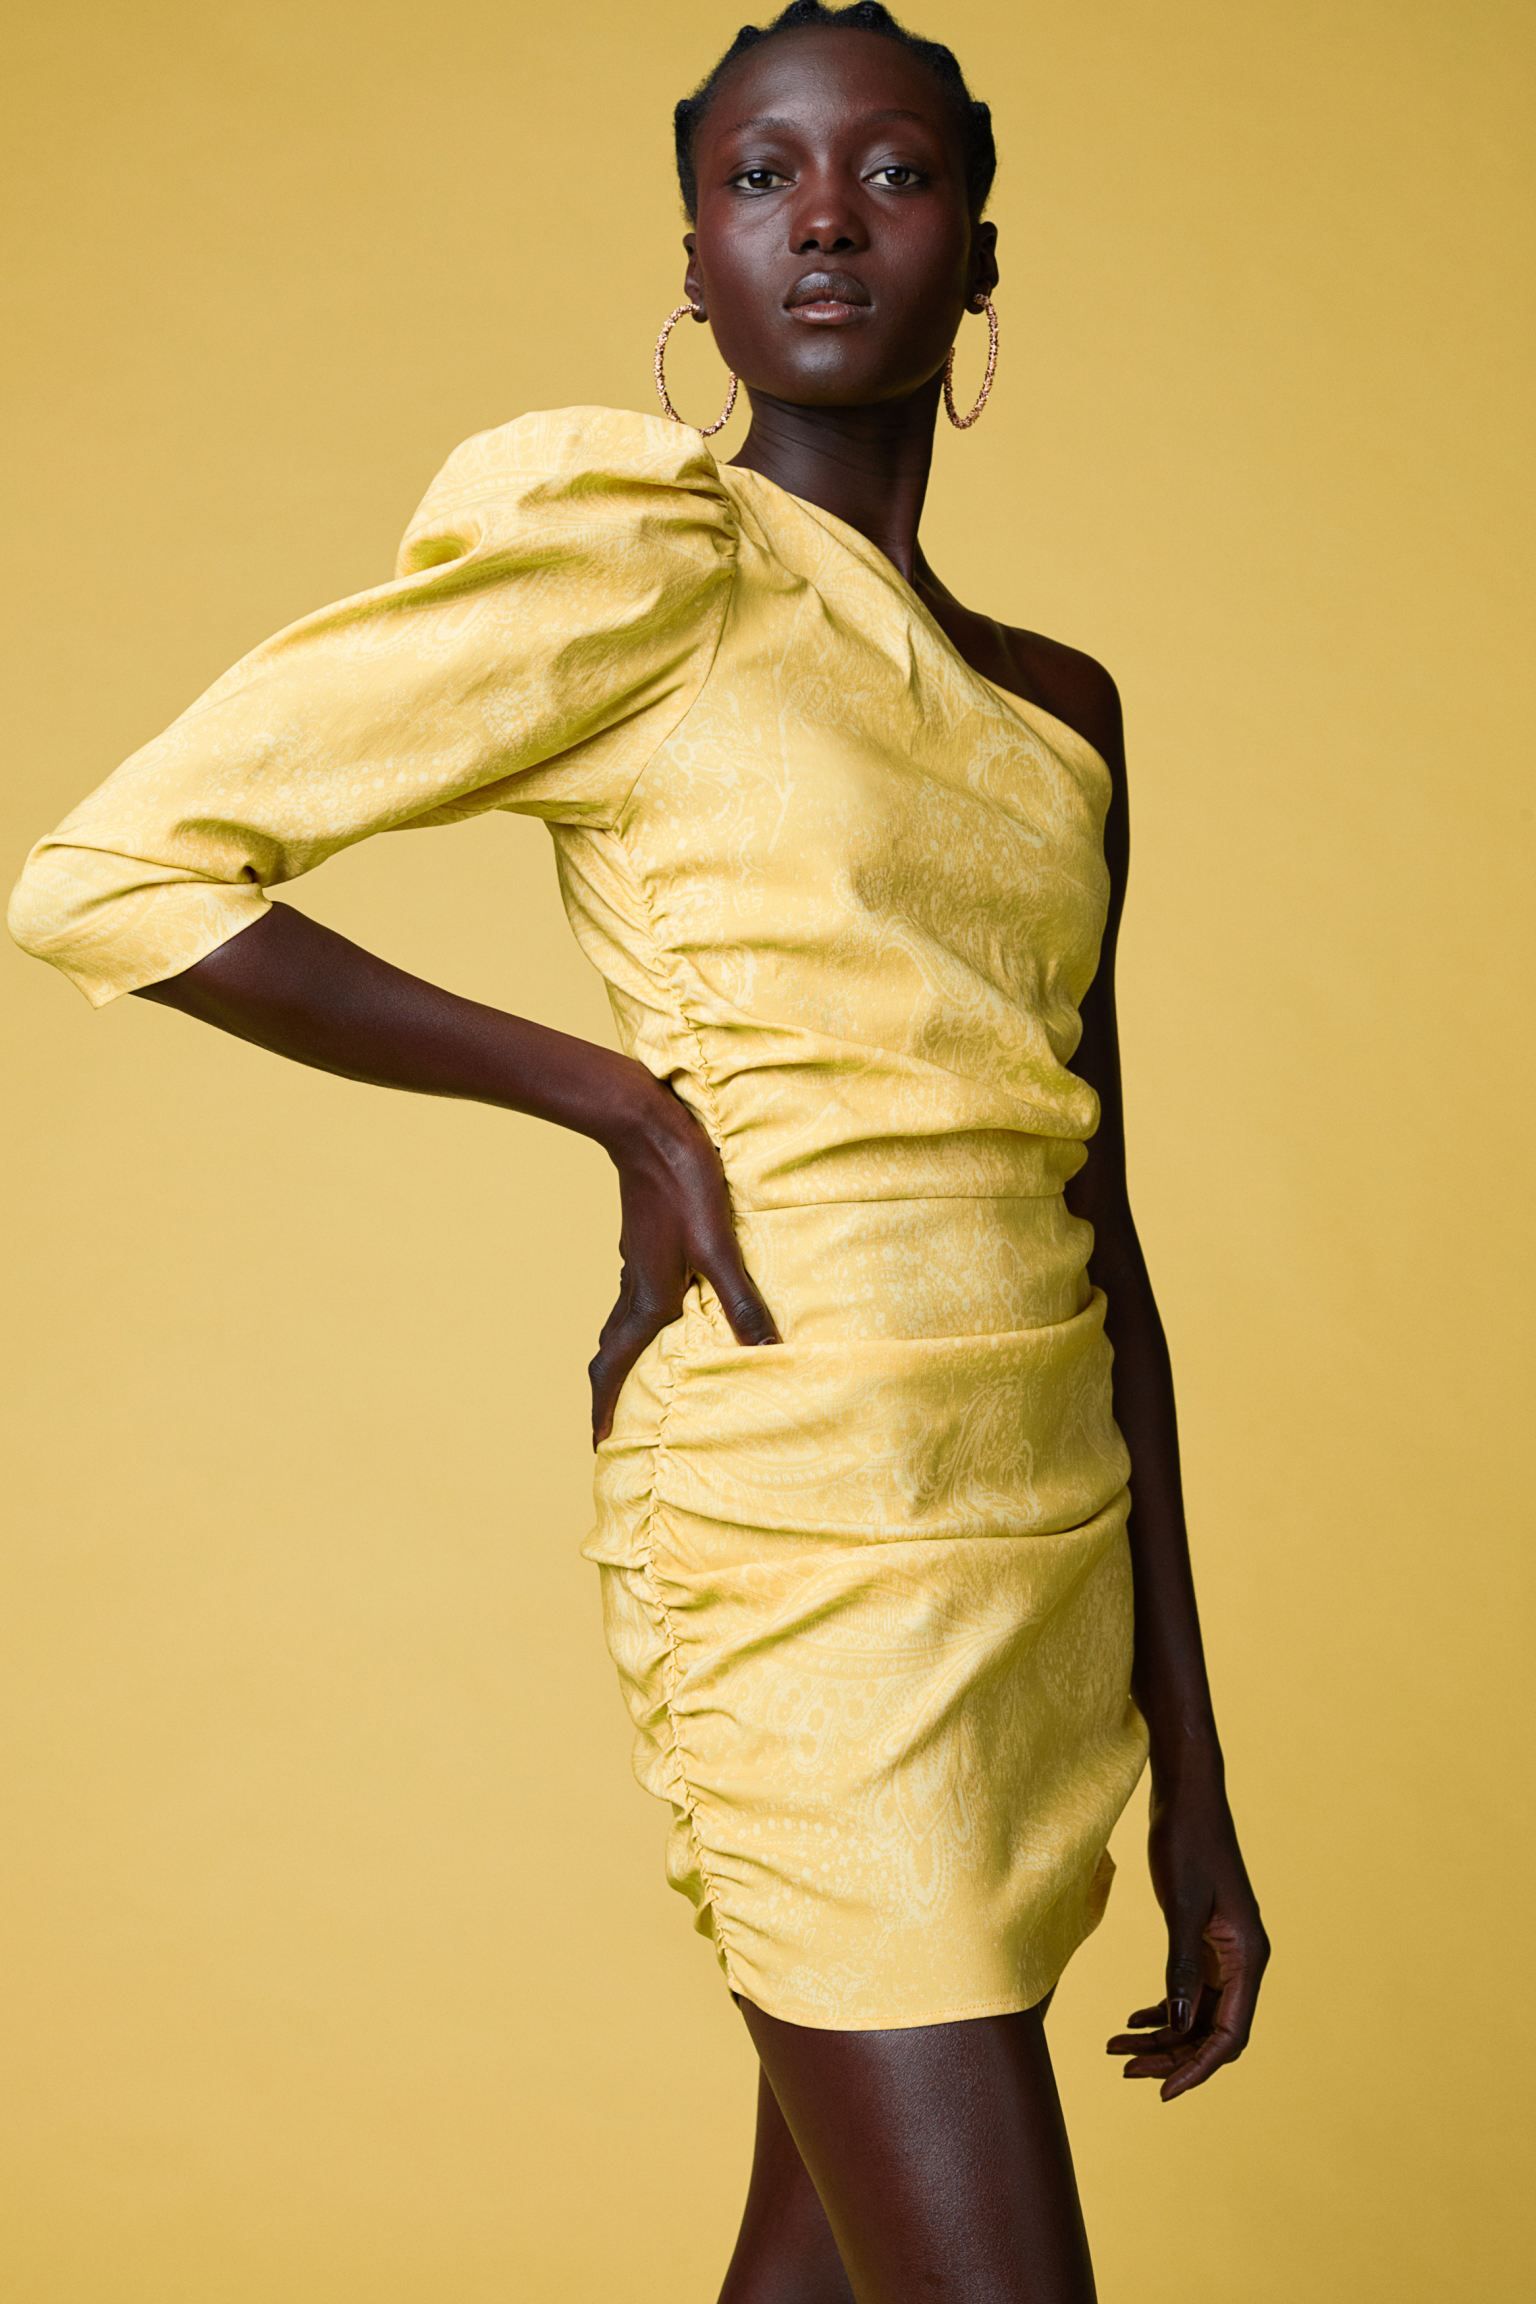 Look invitada: vestido amarillo asimétrico